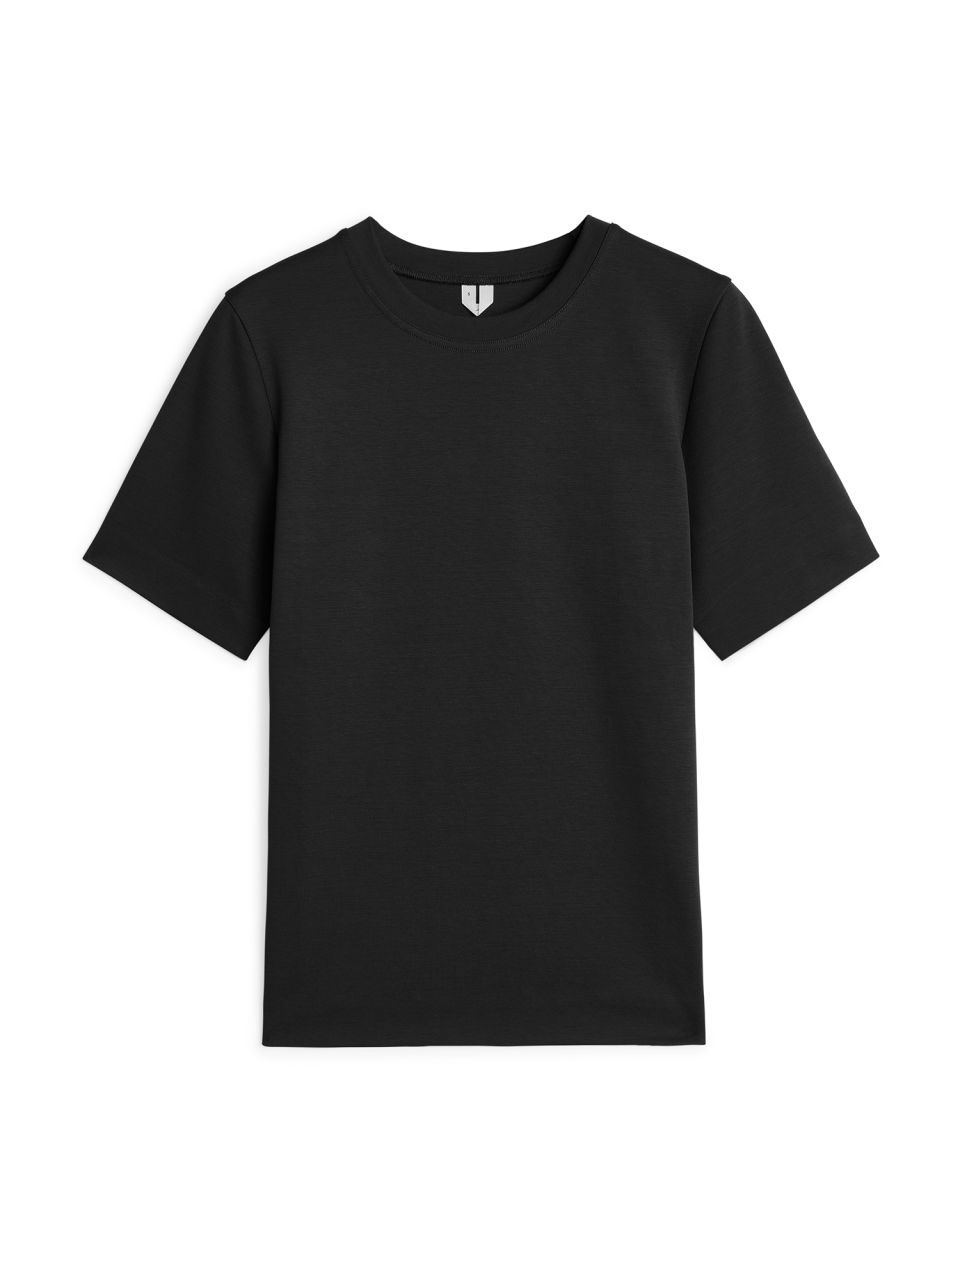 Heavy-Weight T-Shirt - Black - Tops - ARKET GB | ARKET (US&UK)